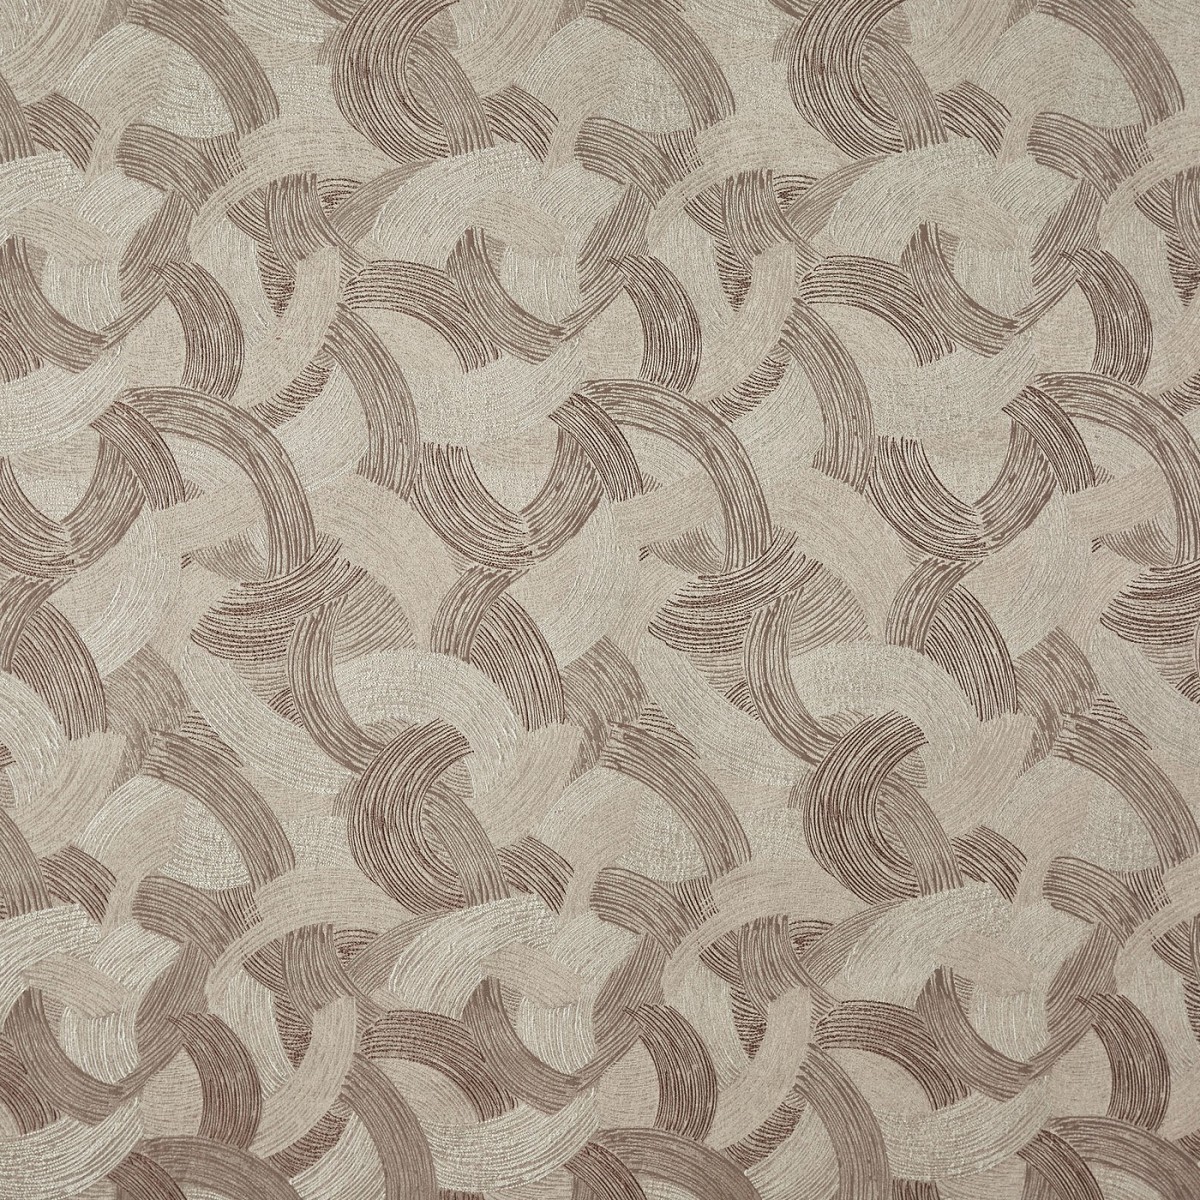 Sagittarius Moonstone Fabric by Prestigious Textiles